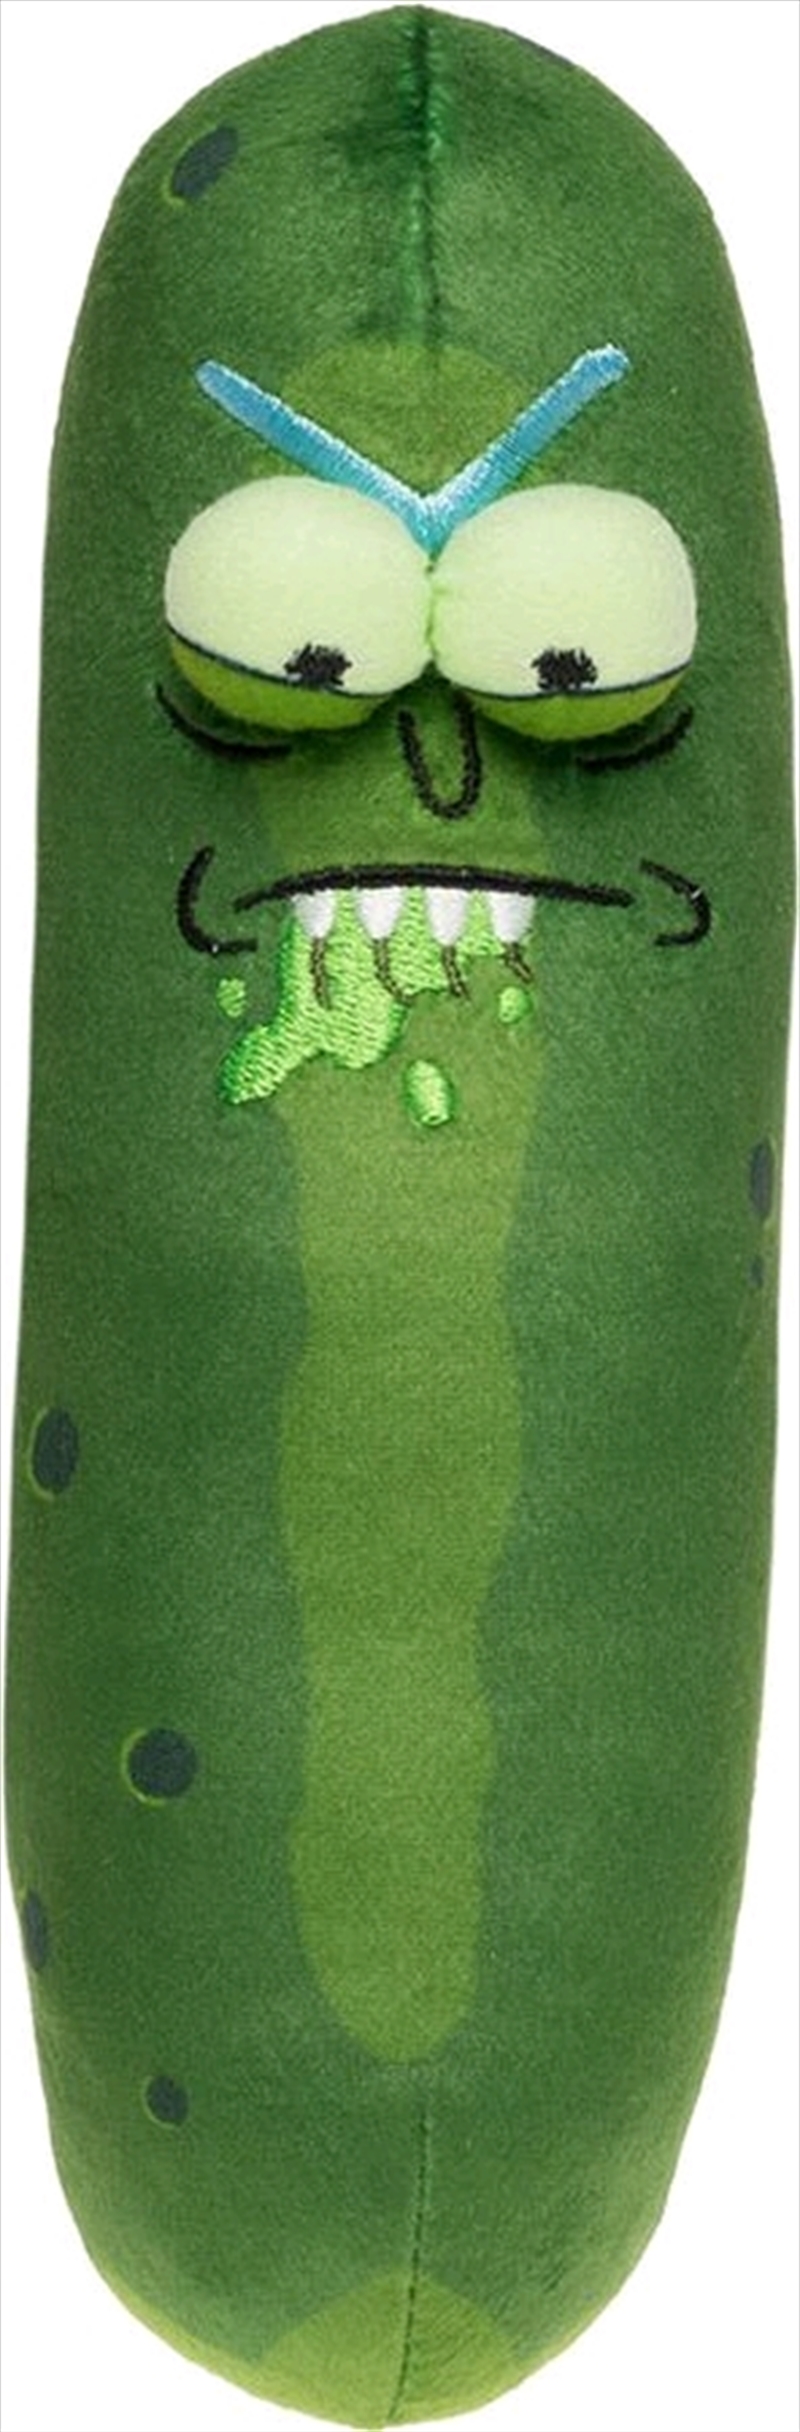 Rick and Morty - Pickle Rick Biting Lip 7" Plush/Product Detail/Plush Toys